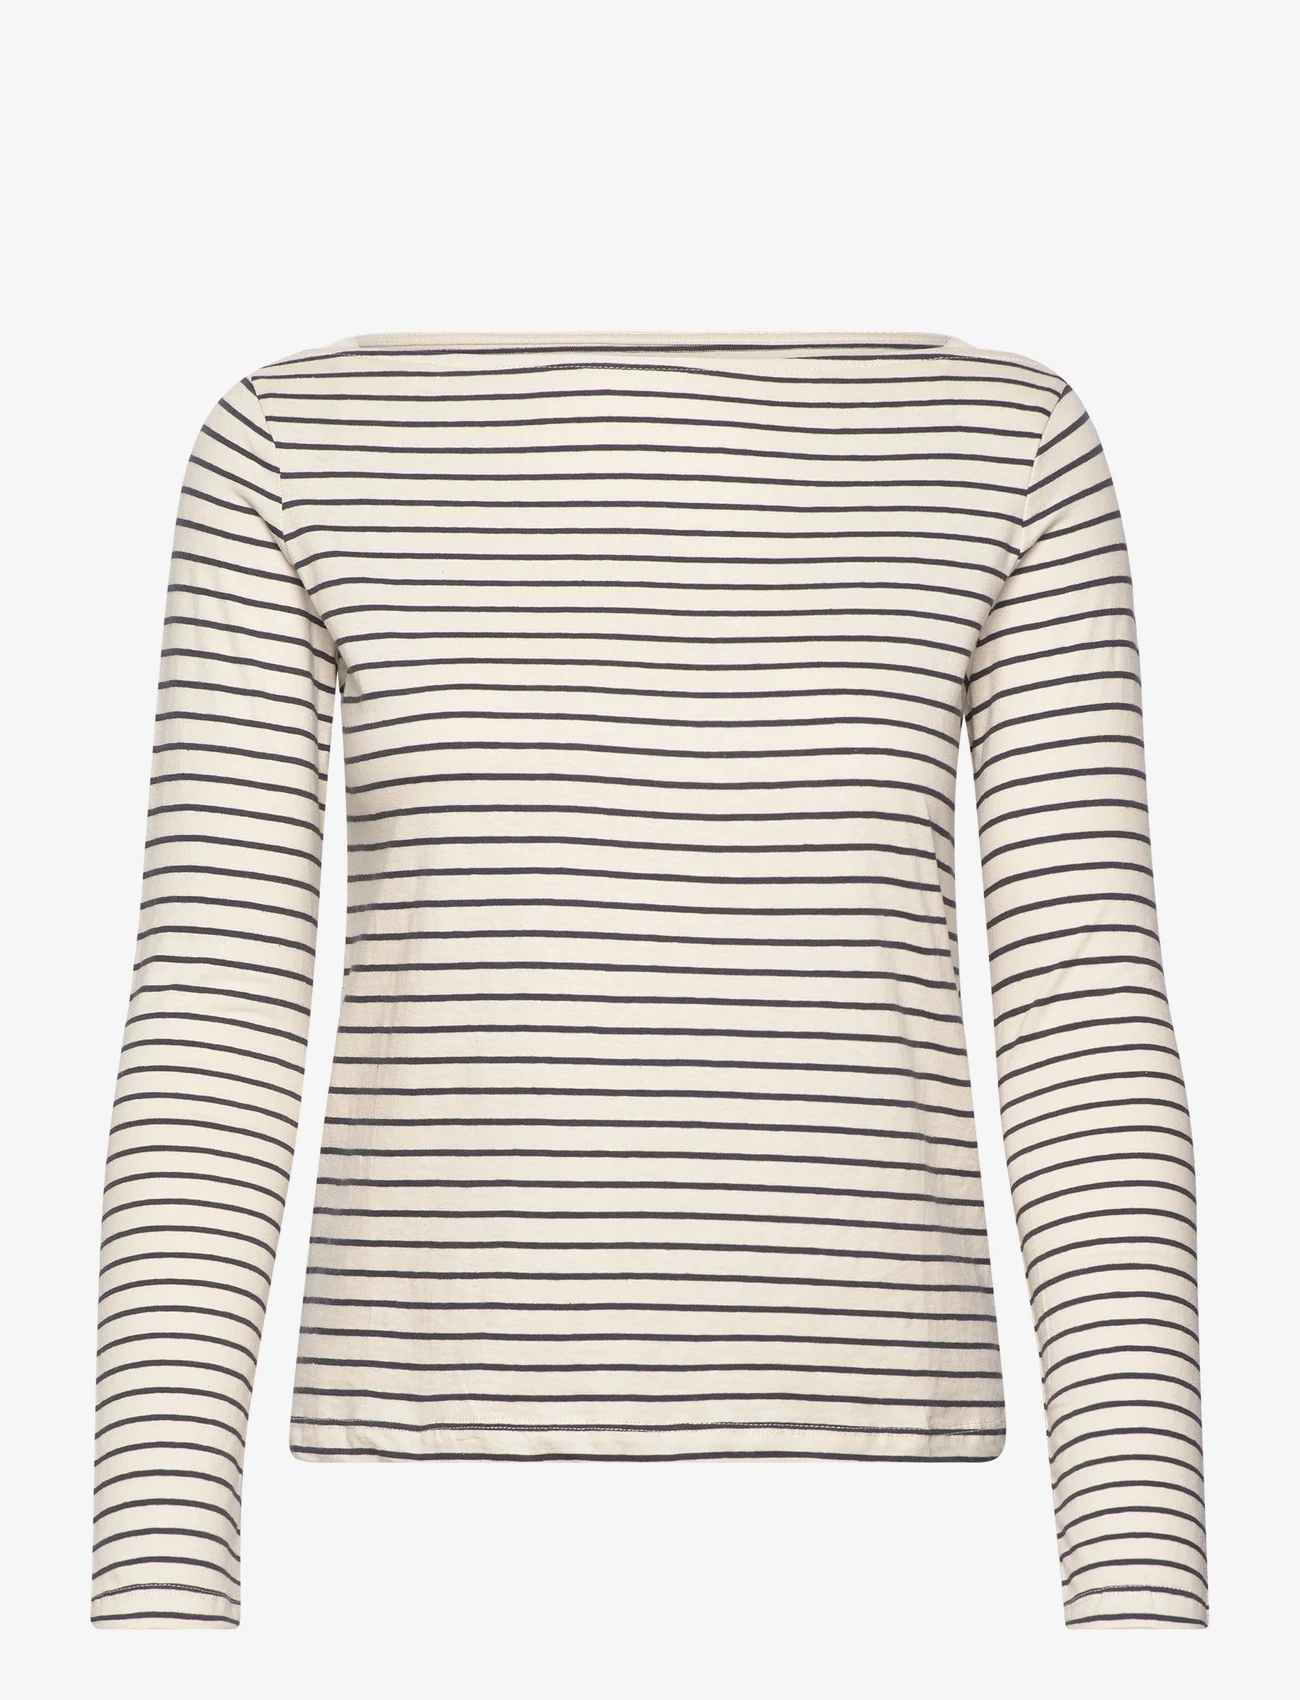 Mango - Cotton boat neck t-shirt - lägsta priserna - lt pastel grey - 0